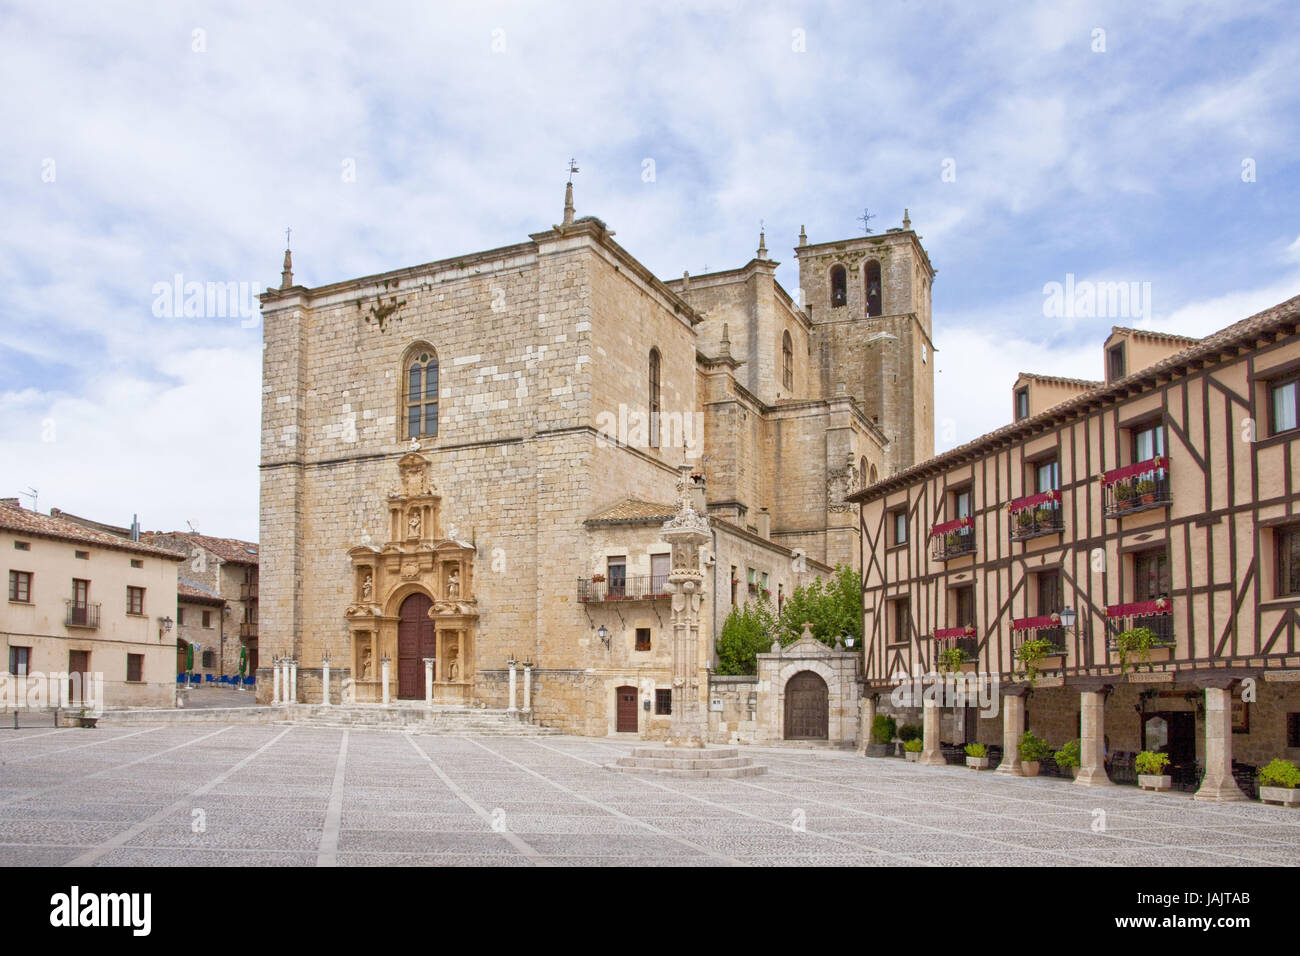 Spain,Castile and León,Penaranda de Duero,church, Stock Photo